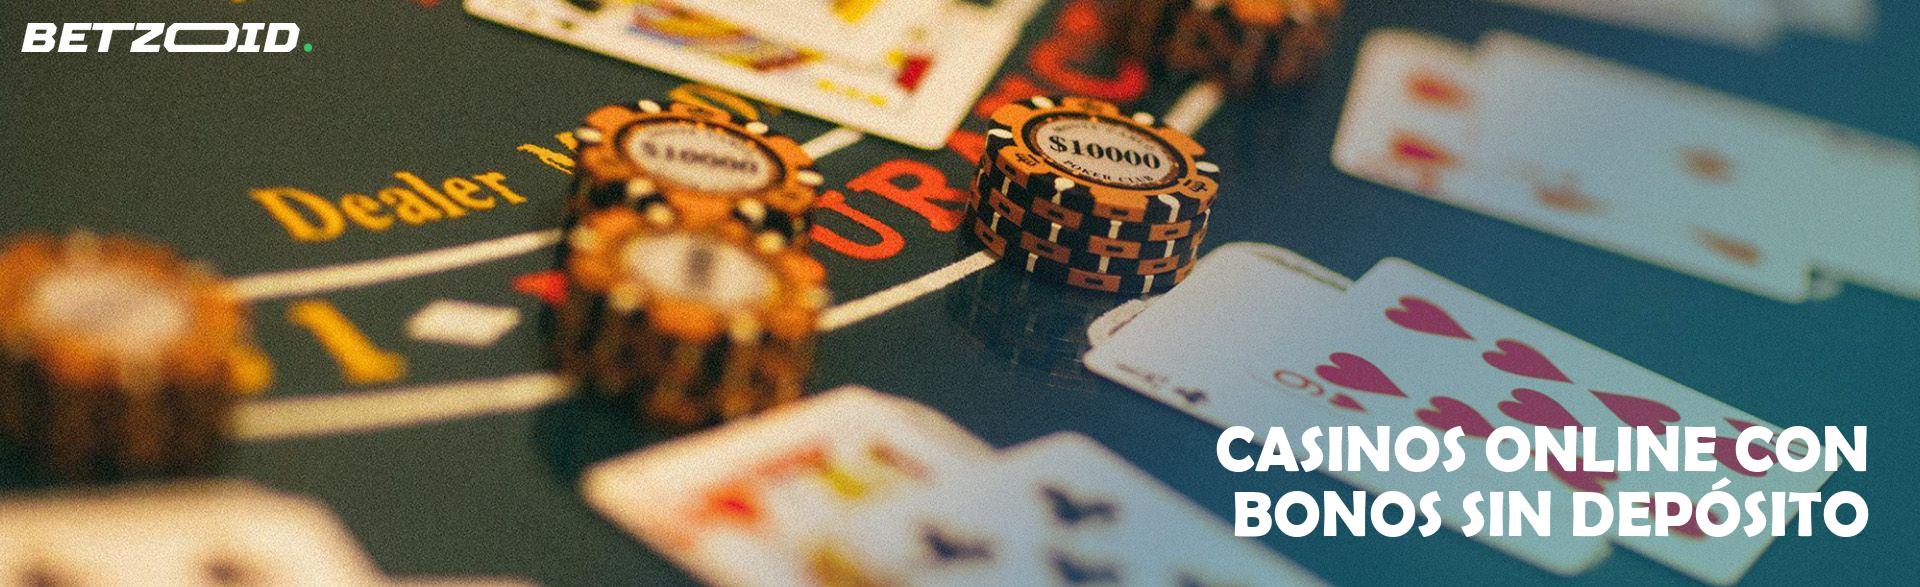 Casinos Online con Bonos sin Depósito.